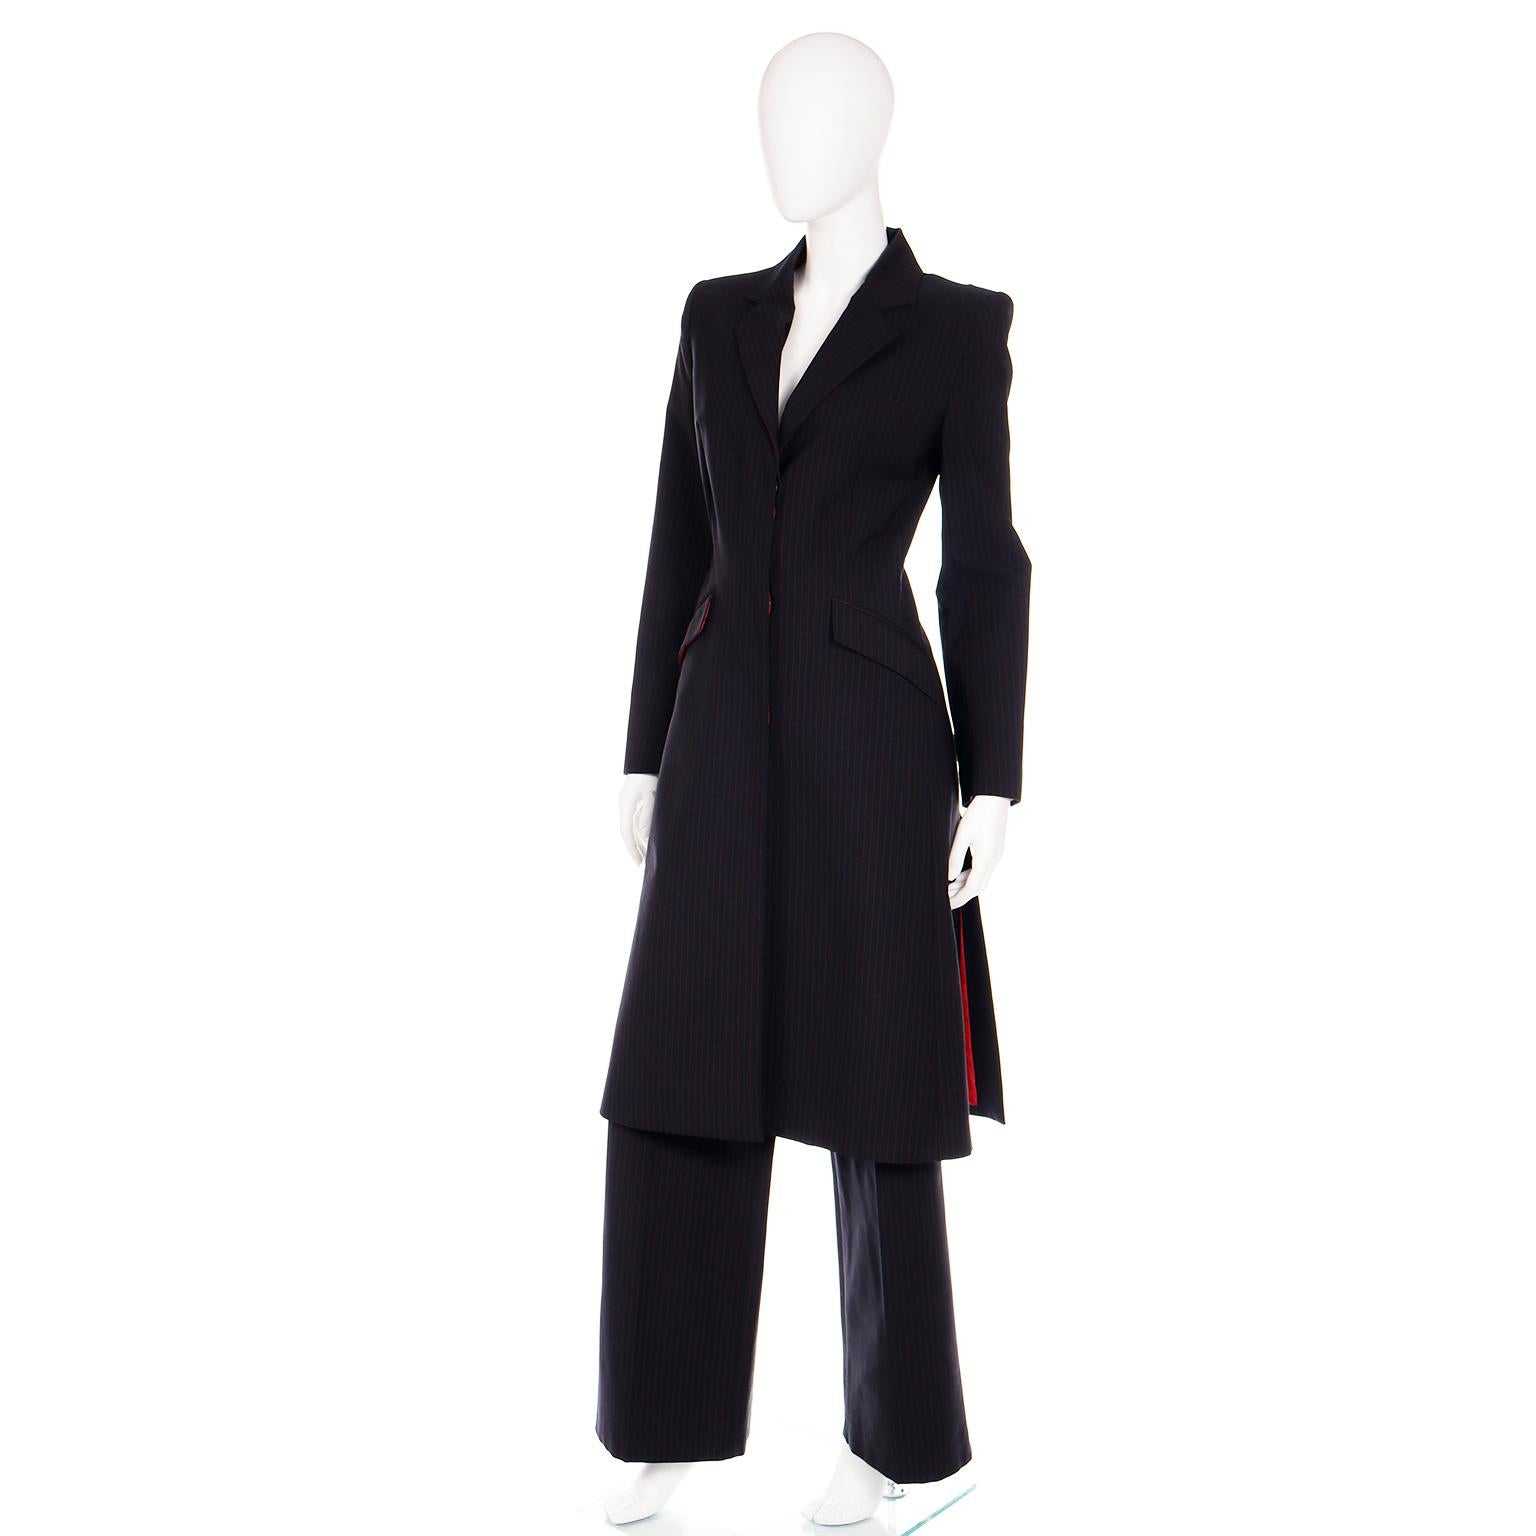 Women's 1998 Alexander McQueen Runway Joan Black & Red Pinstripe Long Coat Trouser Suit